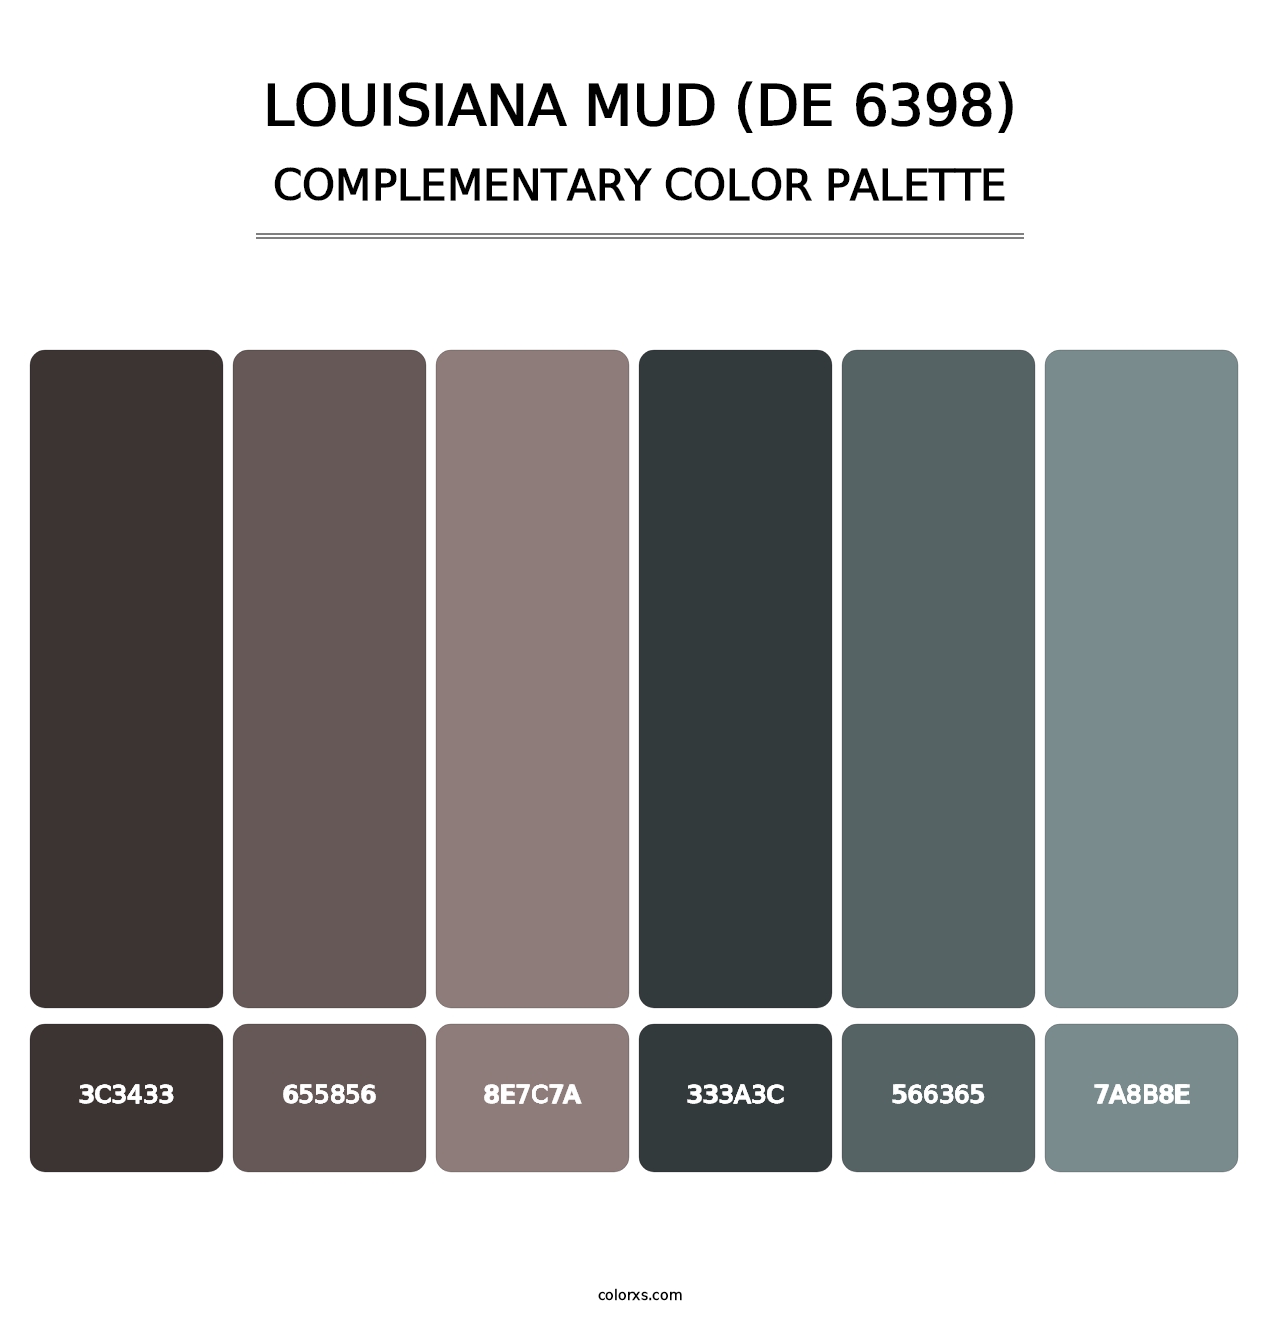 Louisiana Mud (DE 6398) - Complementary Color Palette